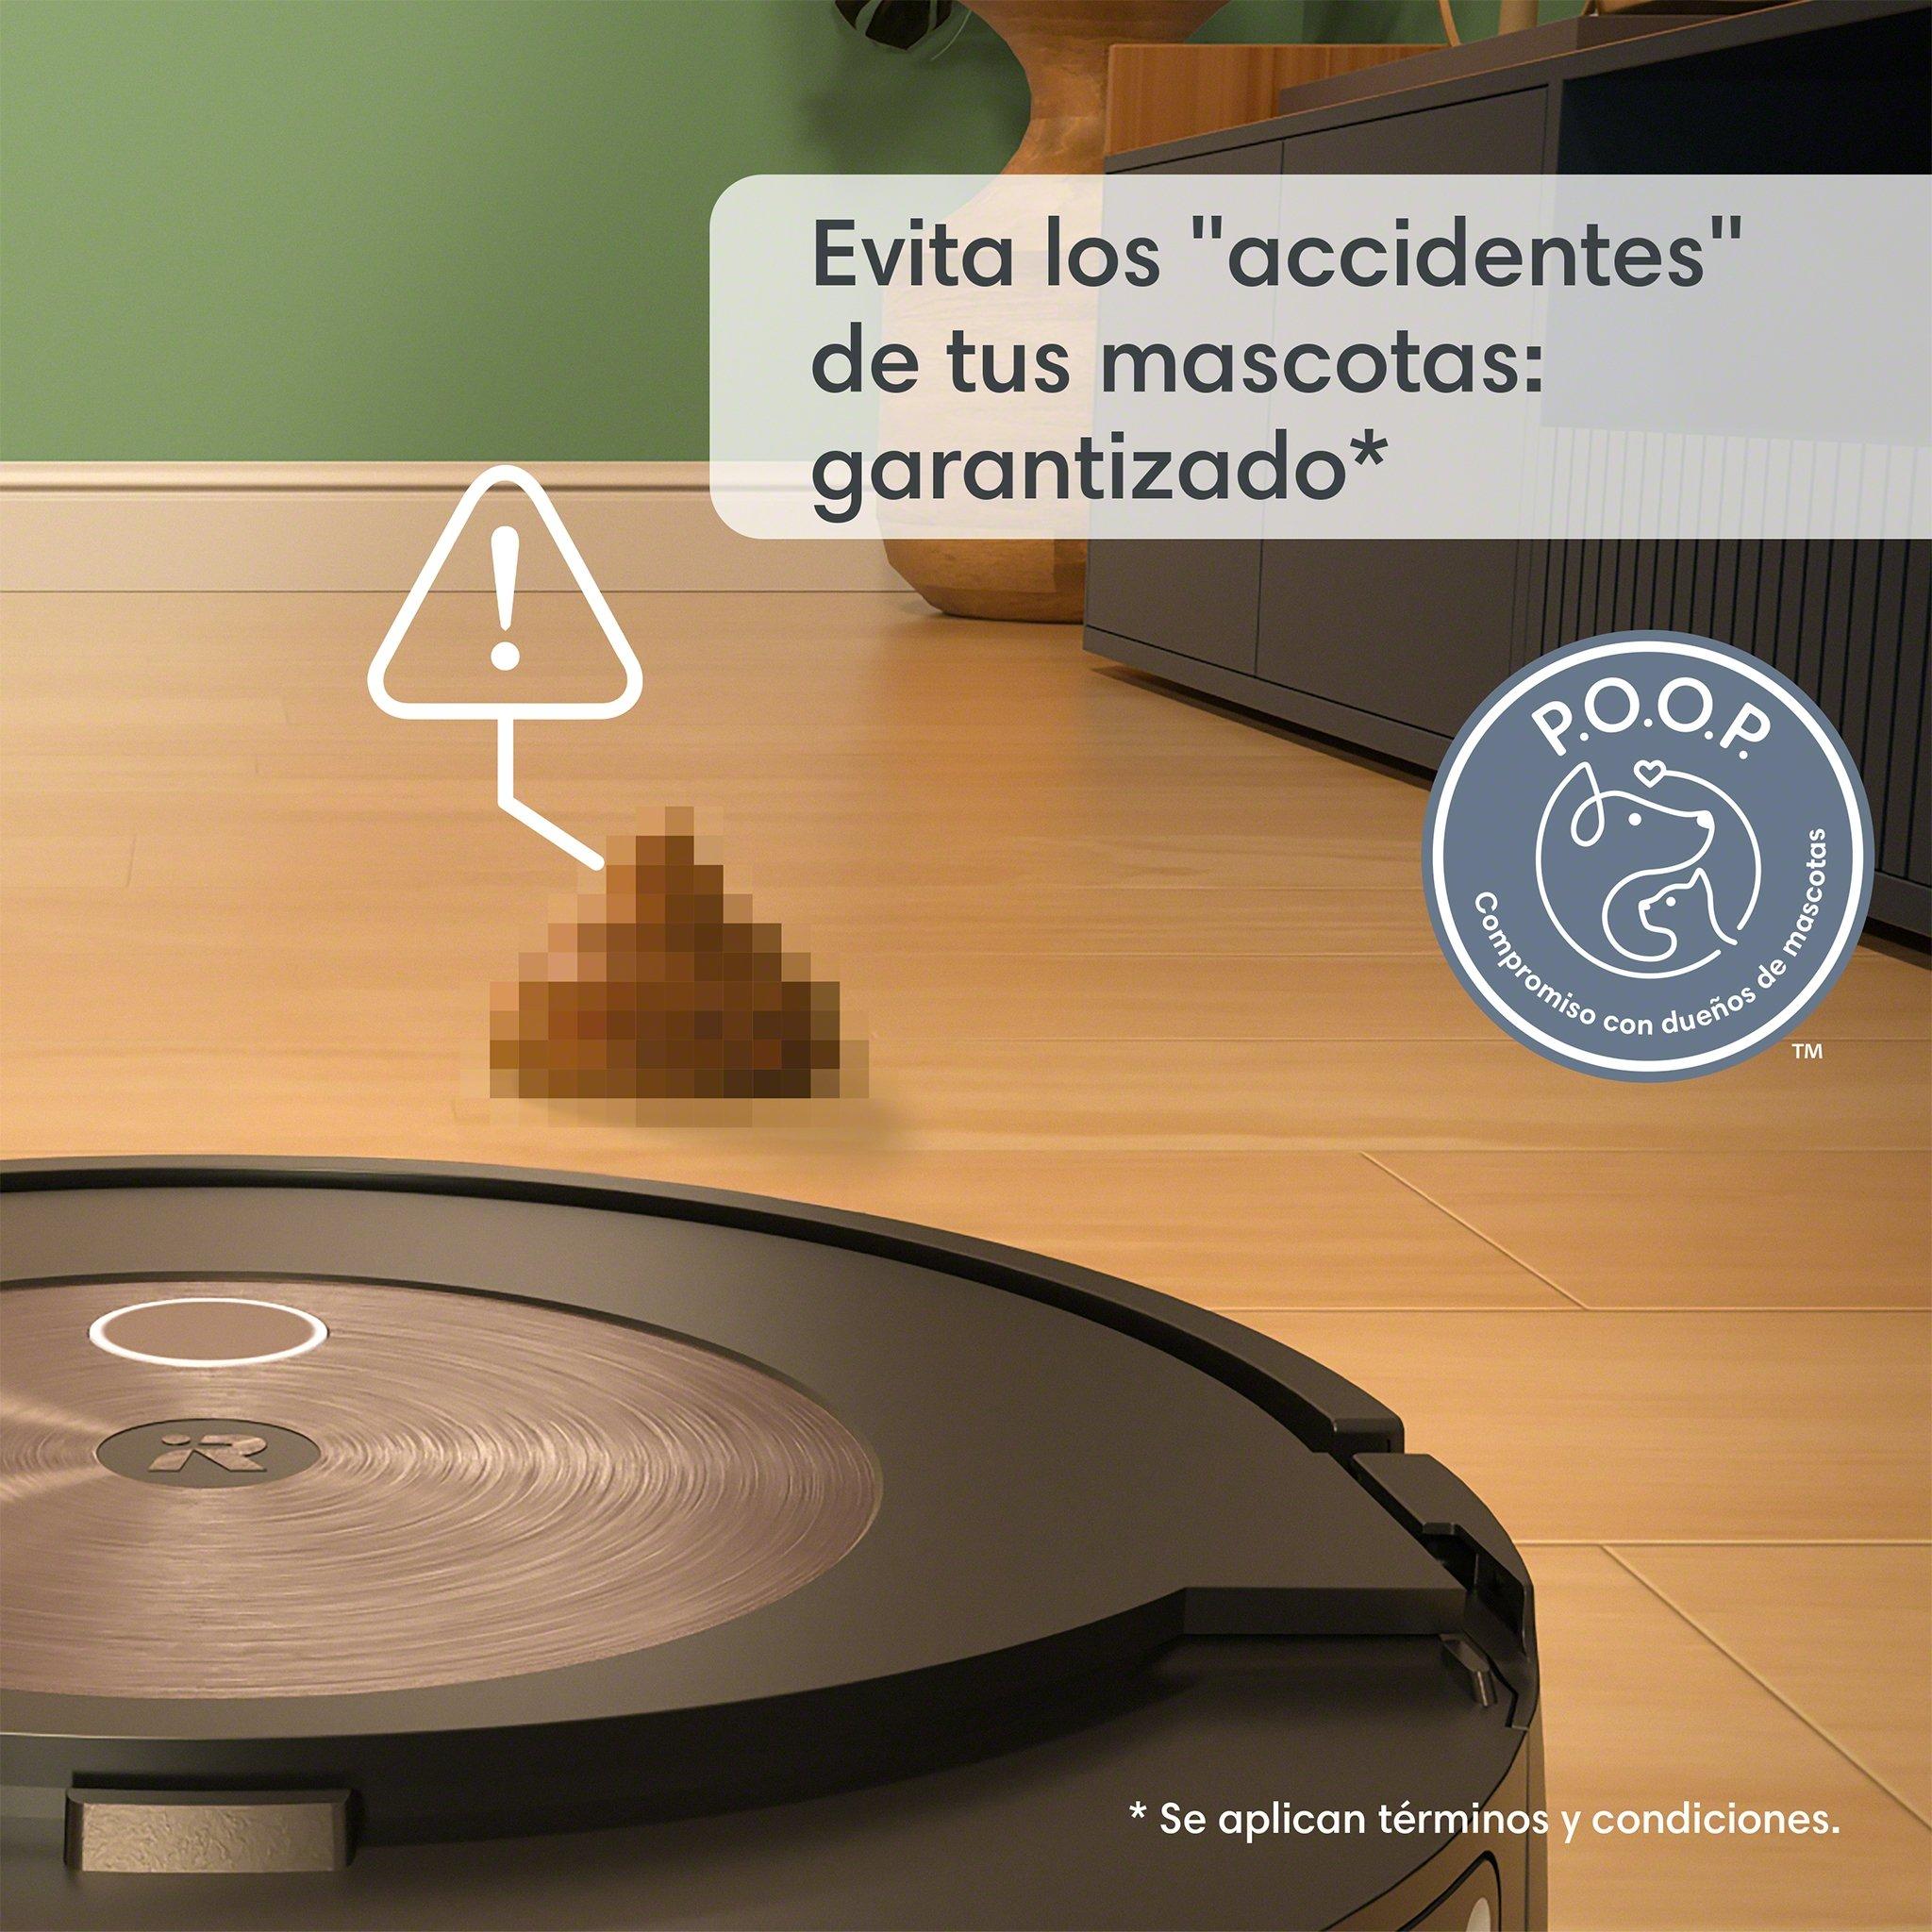 Roomba Combo j9+, un robot aspirador que frota las manchas para conseguir  el mejor resultado, Gadgets